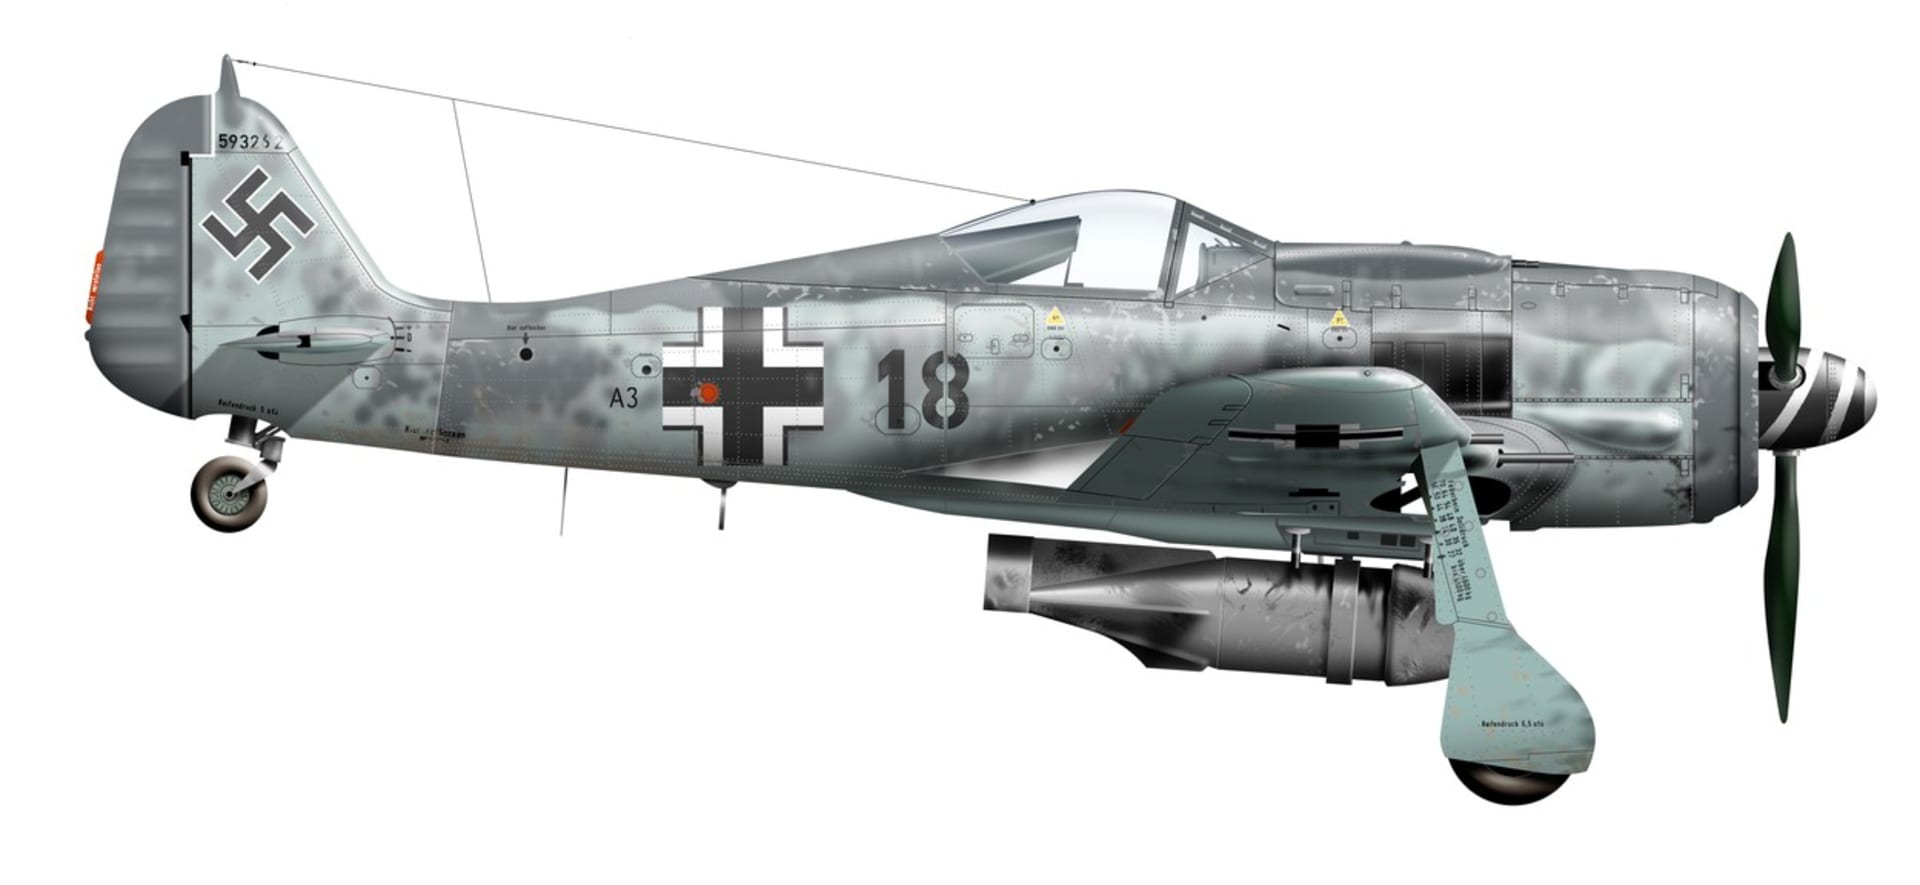 Focke-Wulf Fw 190 A8 se uplatnil jako stíhací bombardér